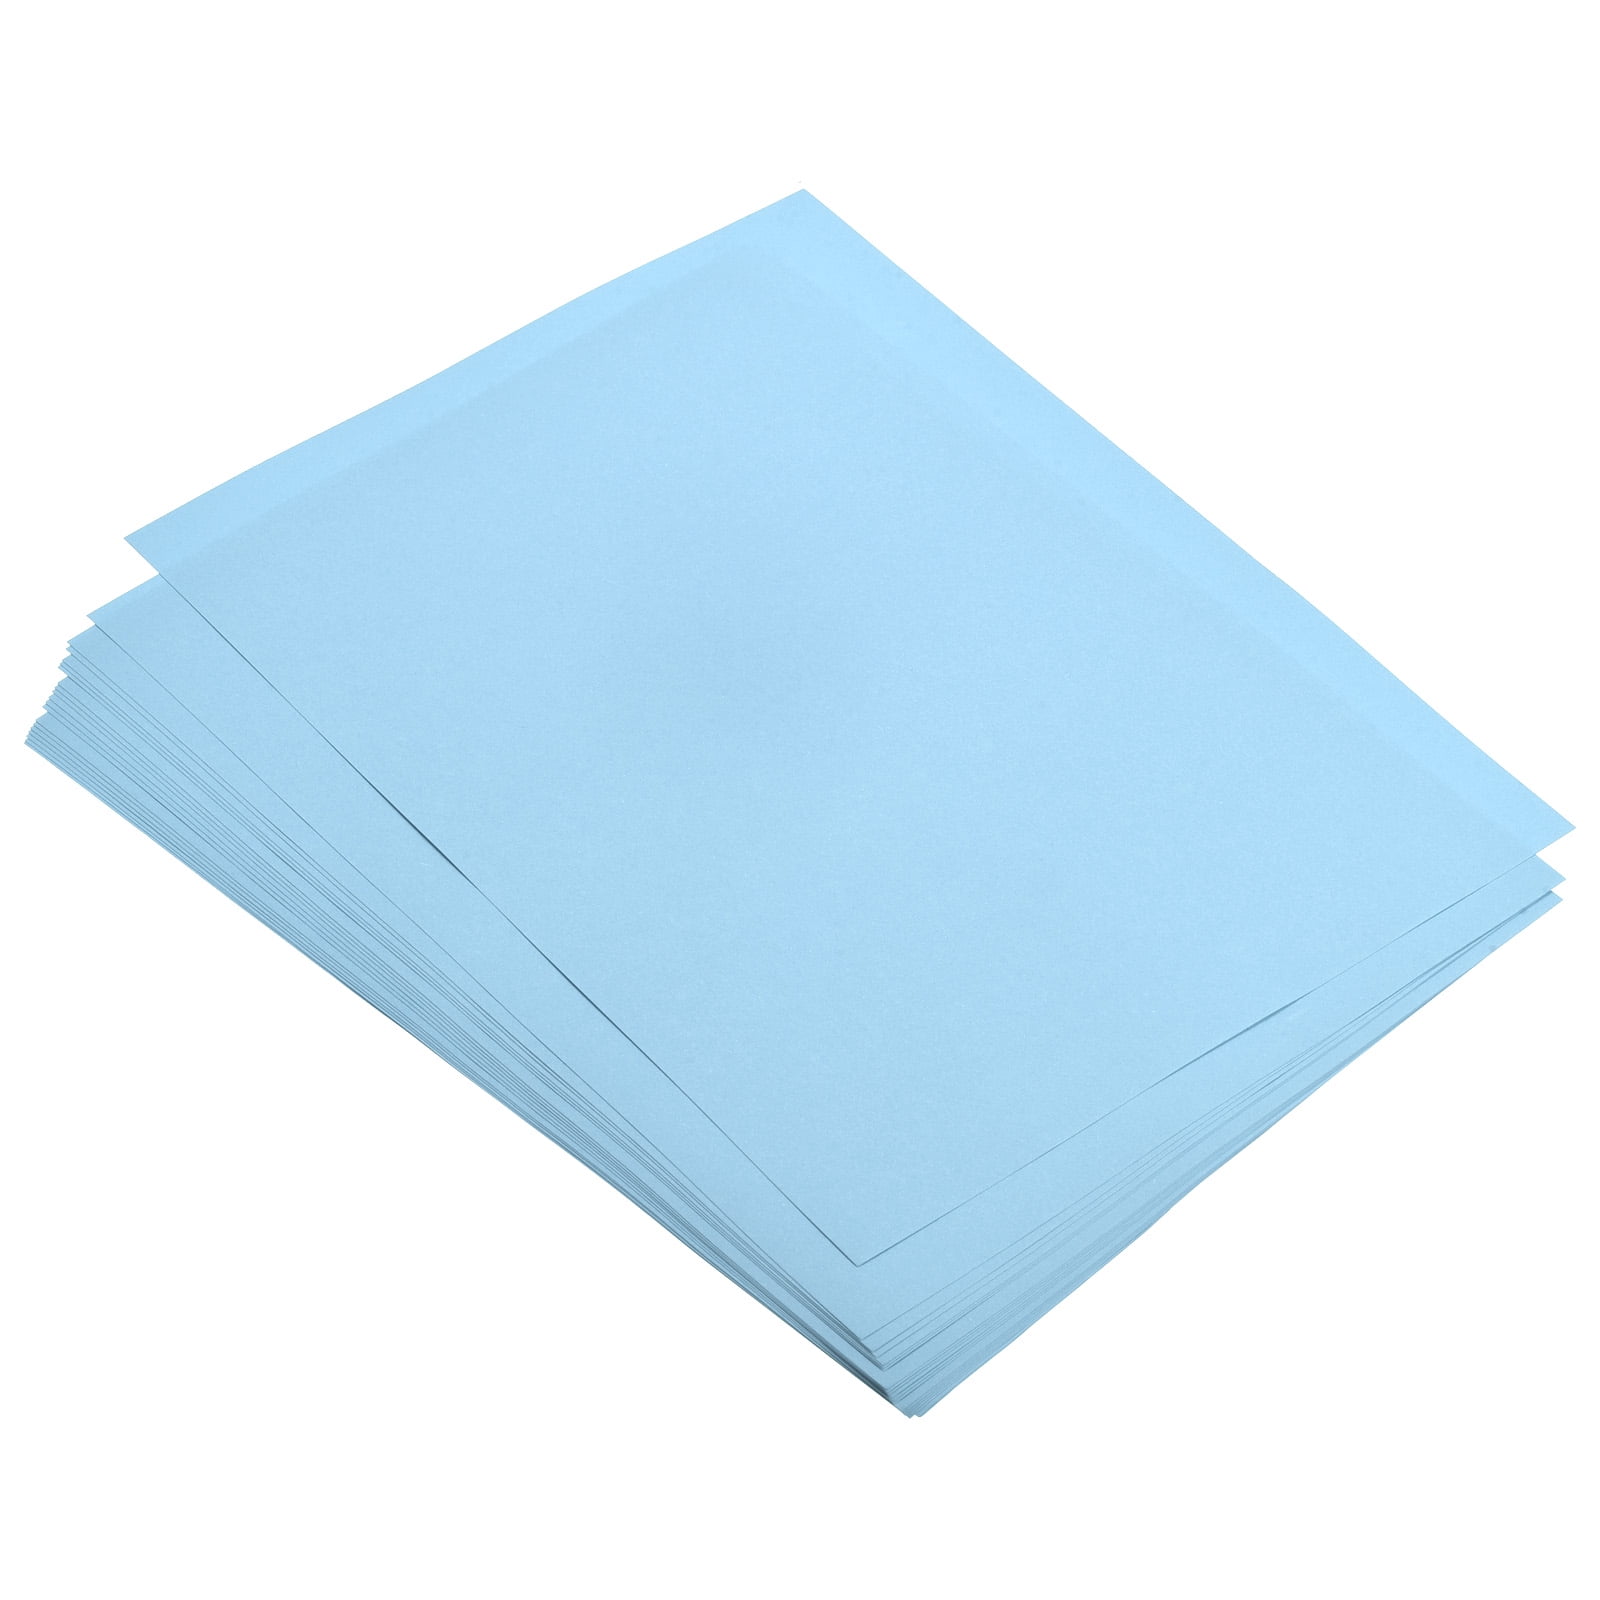 Epson Certifies Koehler Paper Blue4est® Thermal Paper - Koehler Paper